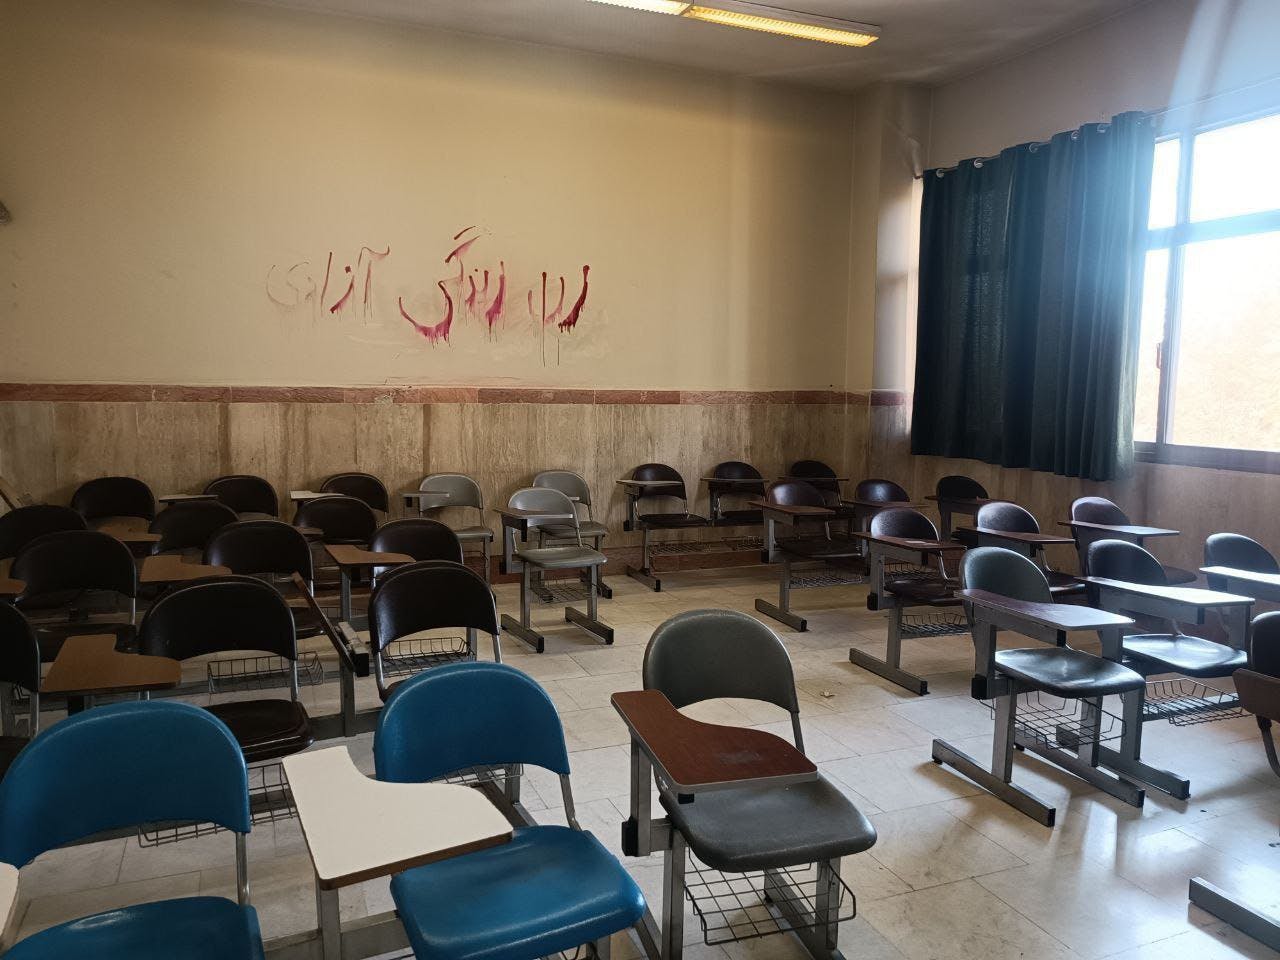 یک کلاس خالی با دیوارنویس سرخ‌رنگ زن، زندگی، آزادی